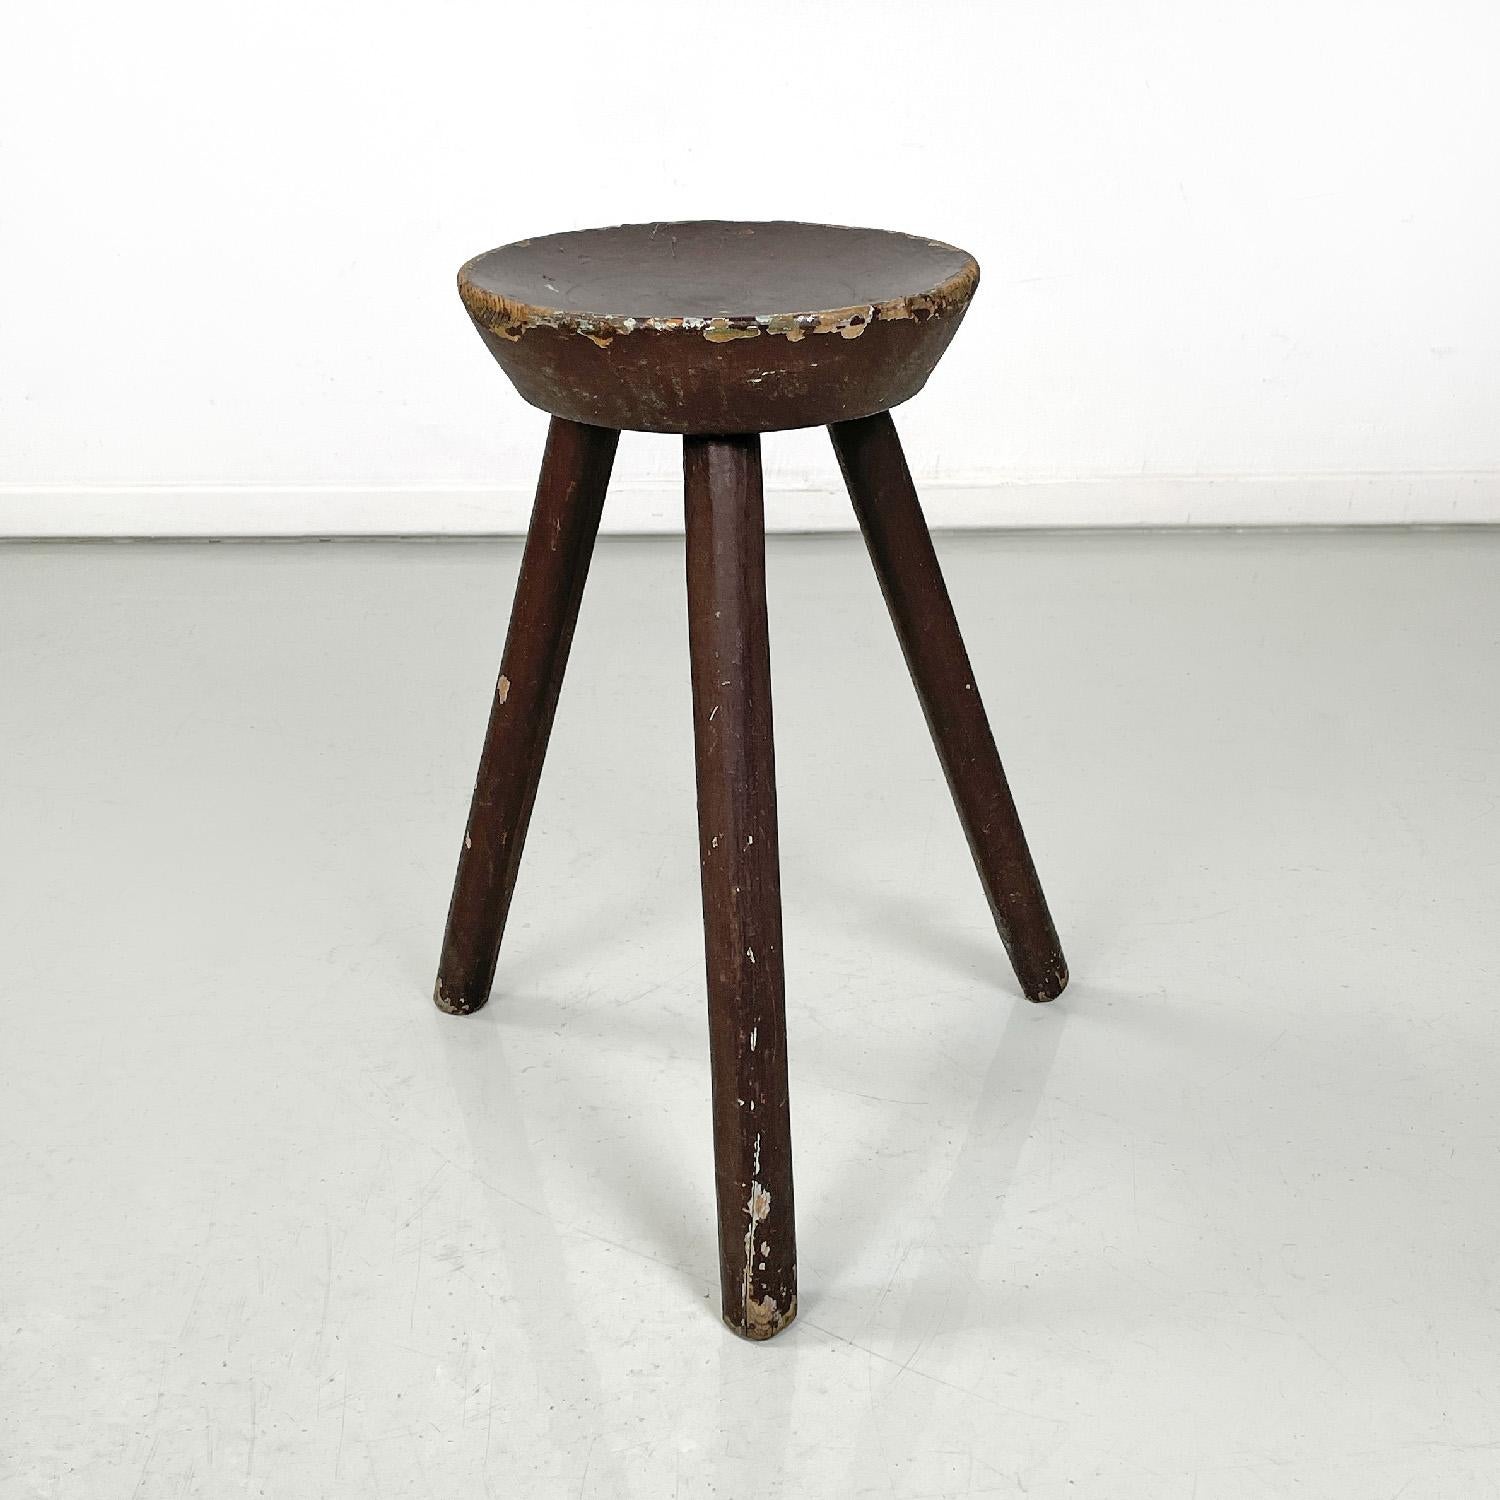 Tabouret italien Art déco en bois peint en brun à trois pieds, années 1920
Tabouret en bois peint brun. L'assise est ronde et convexe, avec trois pieds de section rectangulaire aux angles arrondis.
1920s.
En état vintage, il présente des signes